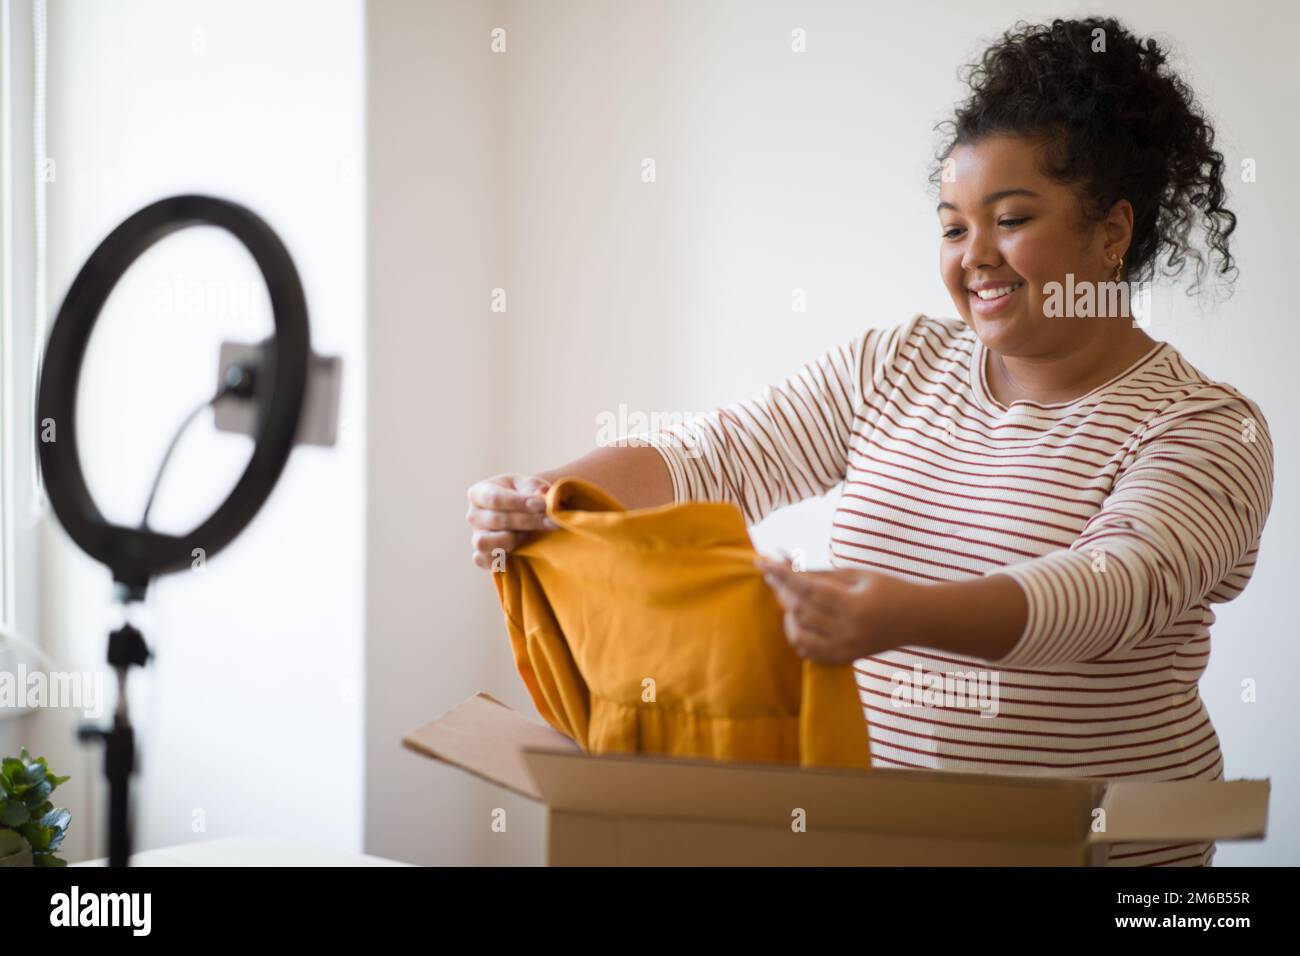 Femme émotive de surpoids de la mode blogger montrant des vêtements de marque, déballage de colis Banque D'Images